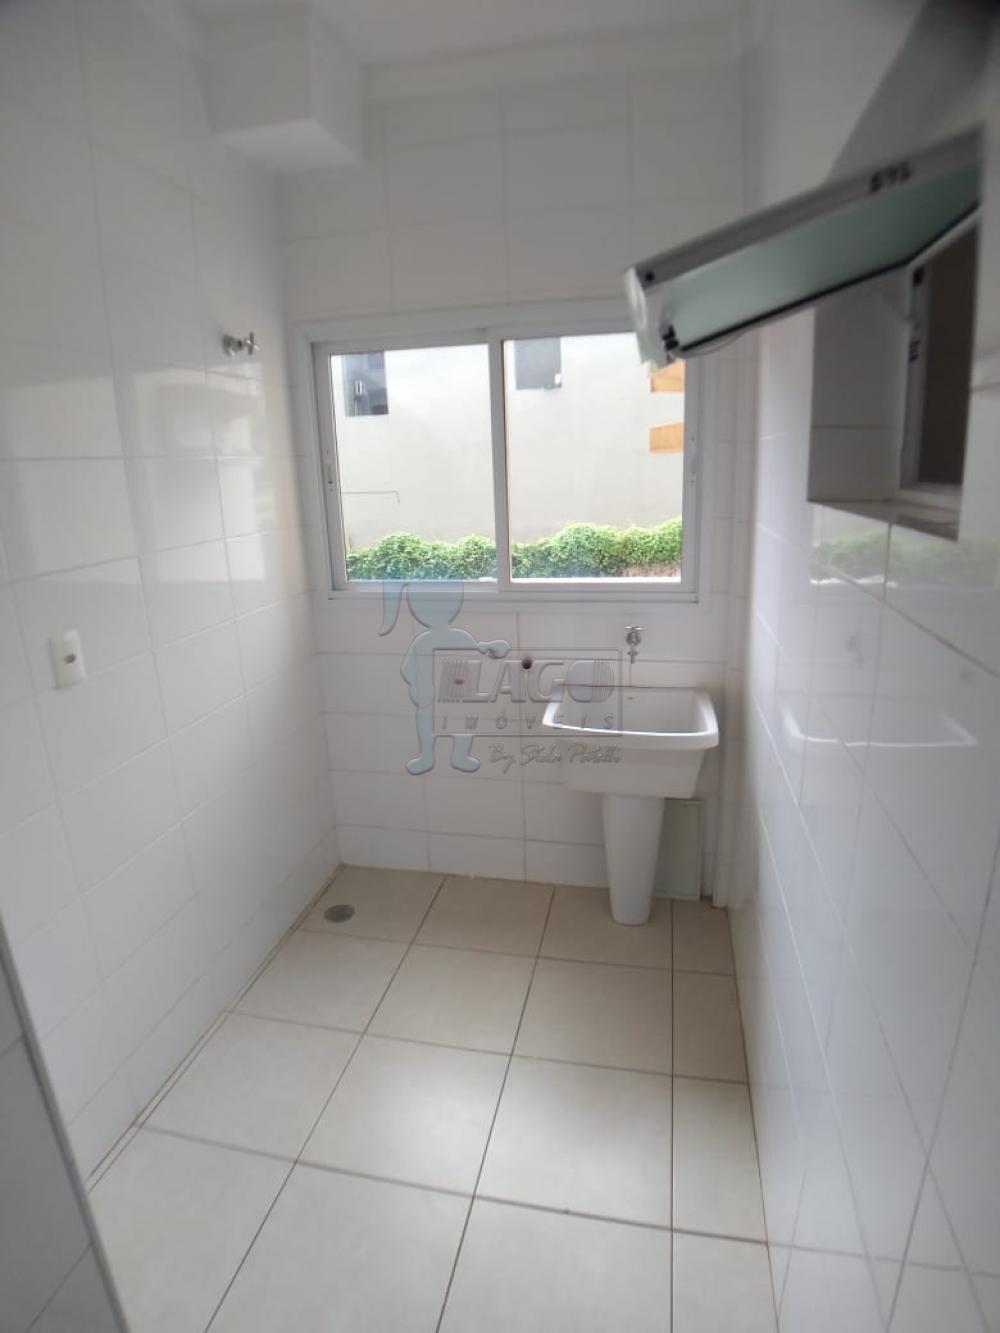 Alugar Apartamentos / Padrão em Ribeirão Preto R$ 850,00 - Foto 5